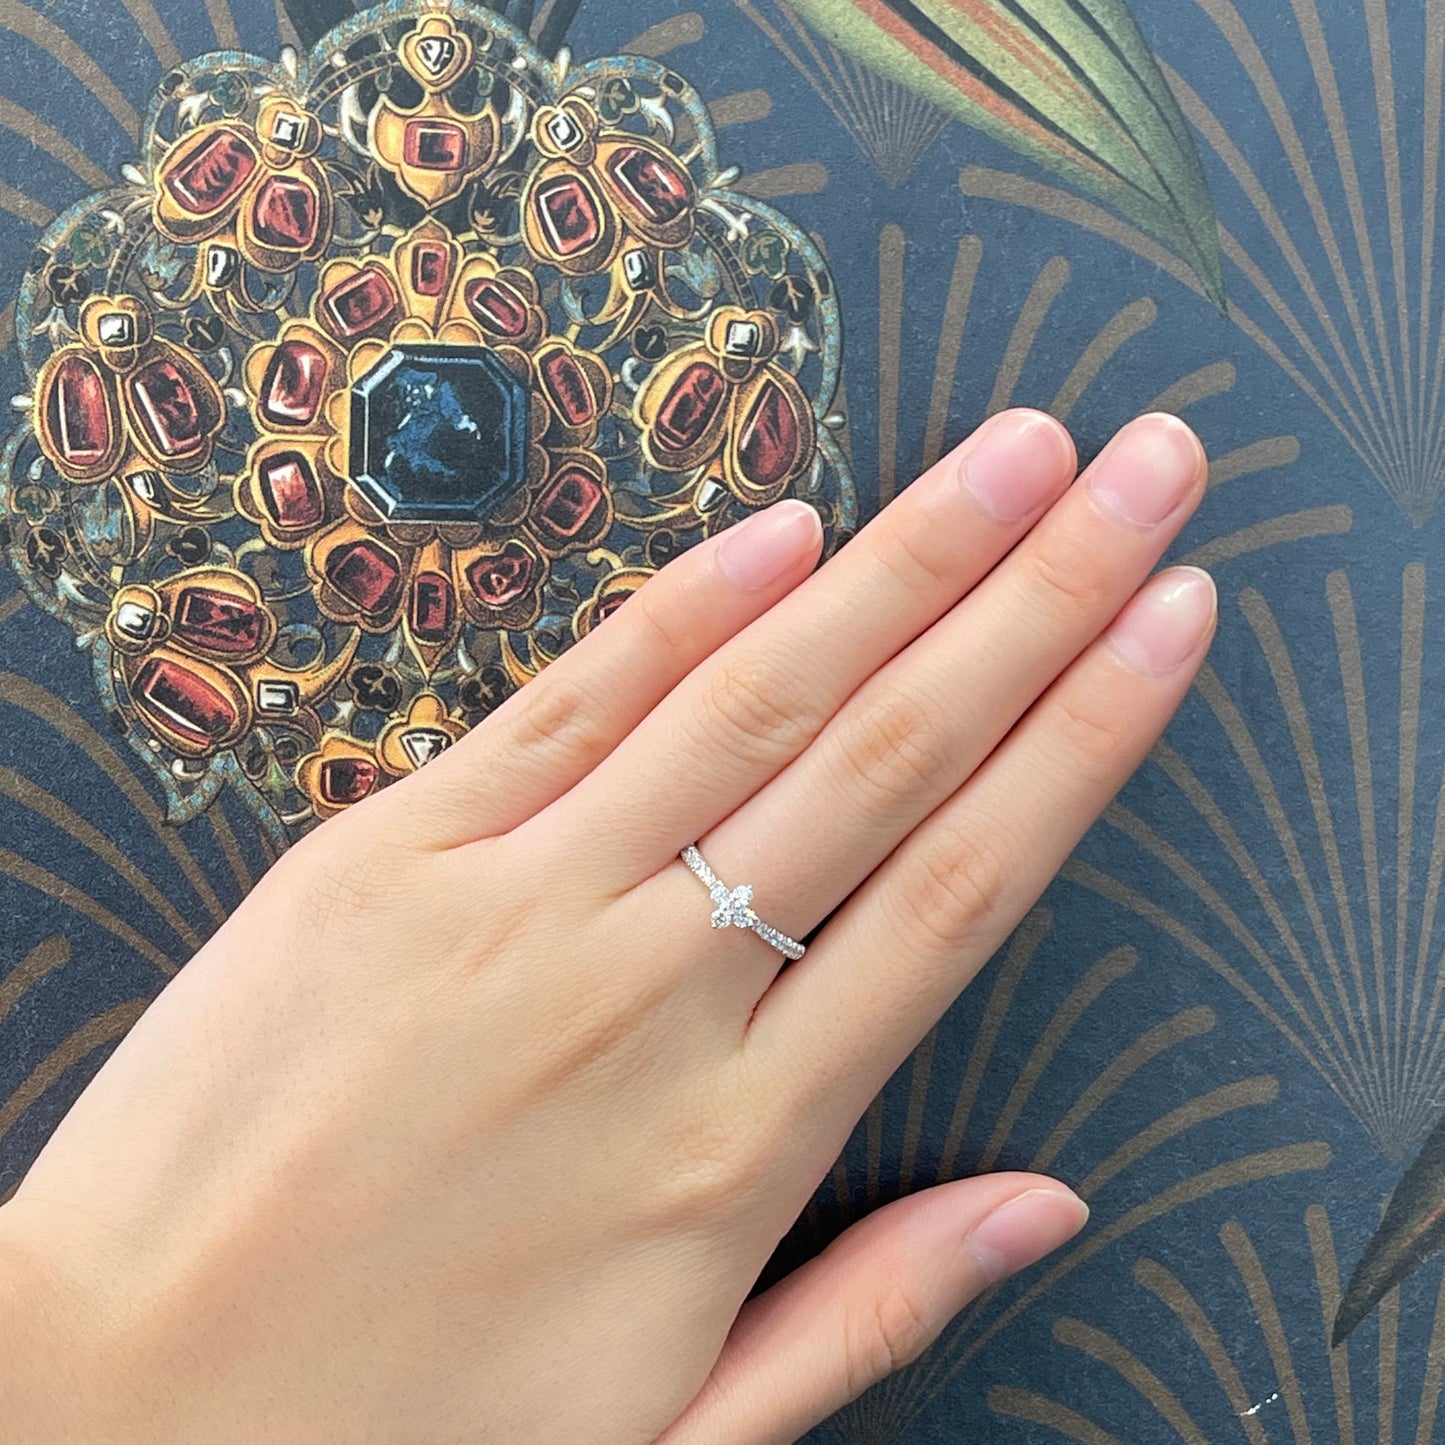 18k白金鑽石戒指在中指上 18k White Gold Clover Diamond Ring on middle finger